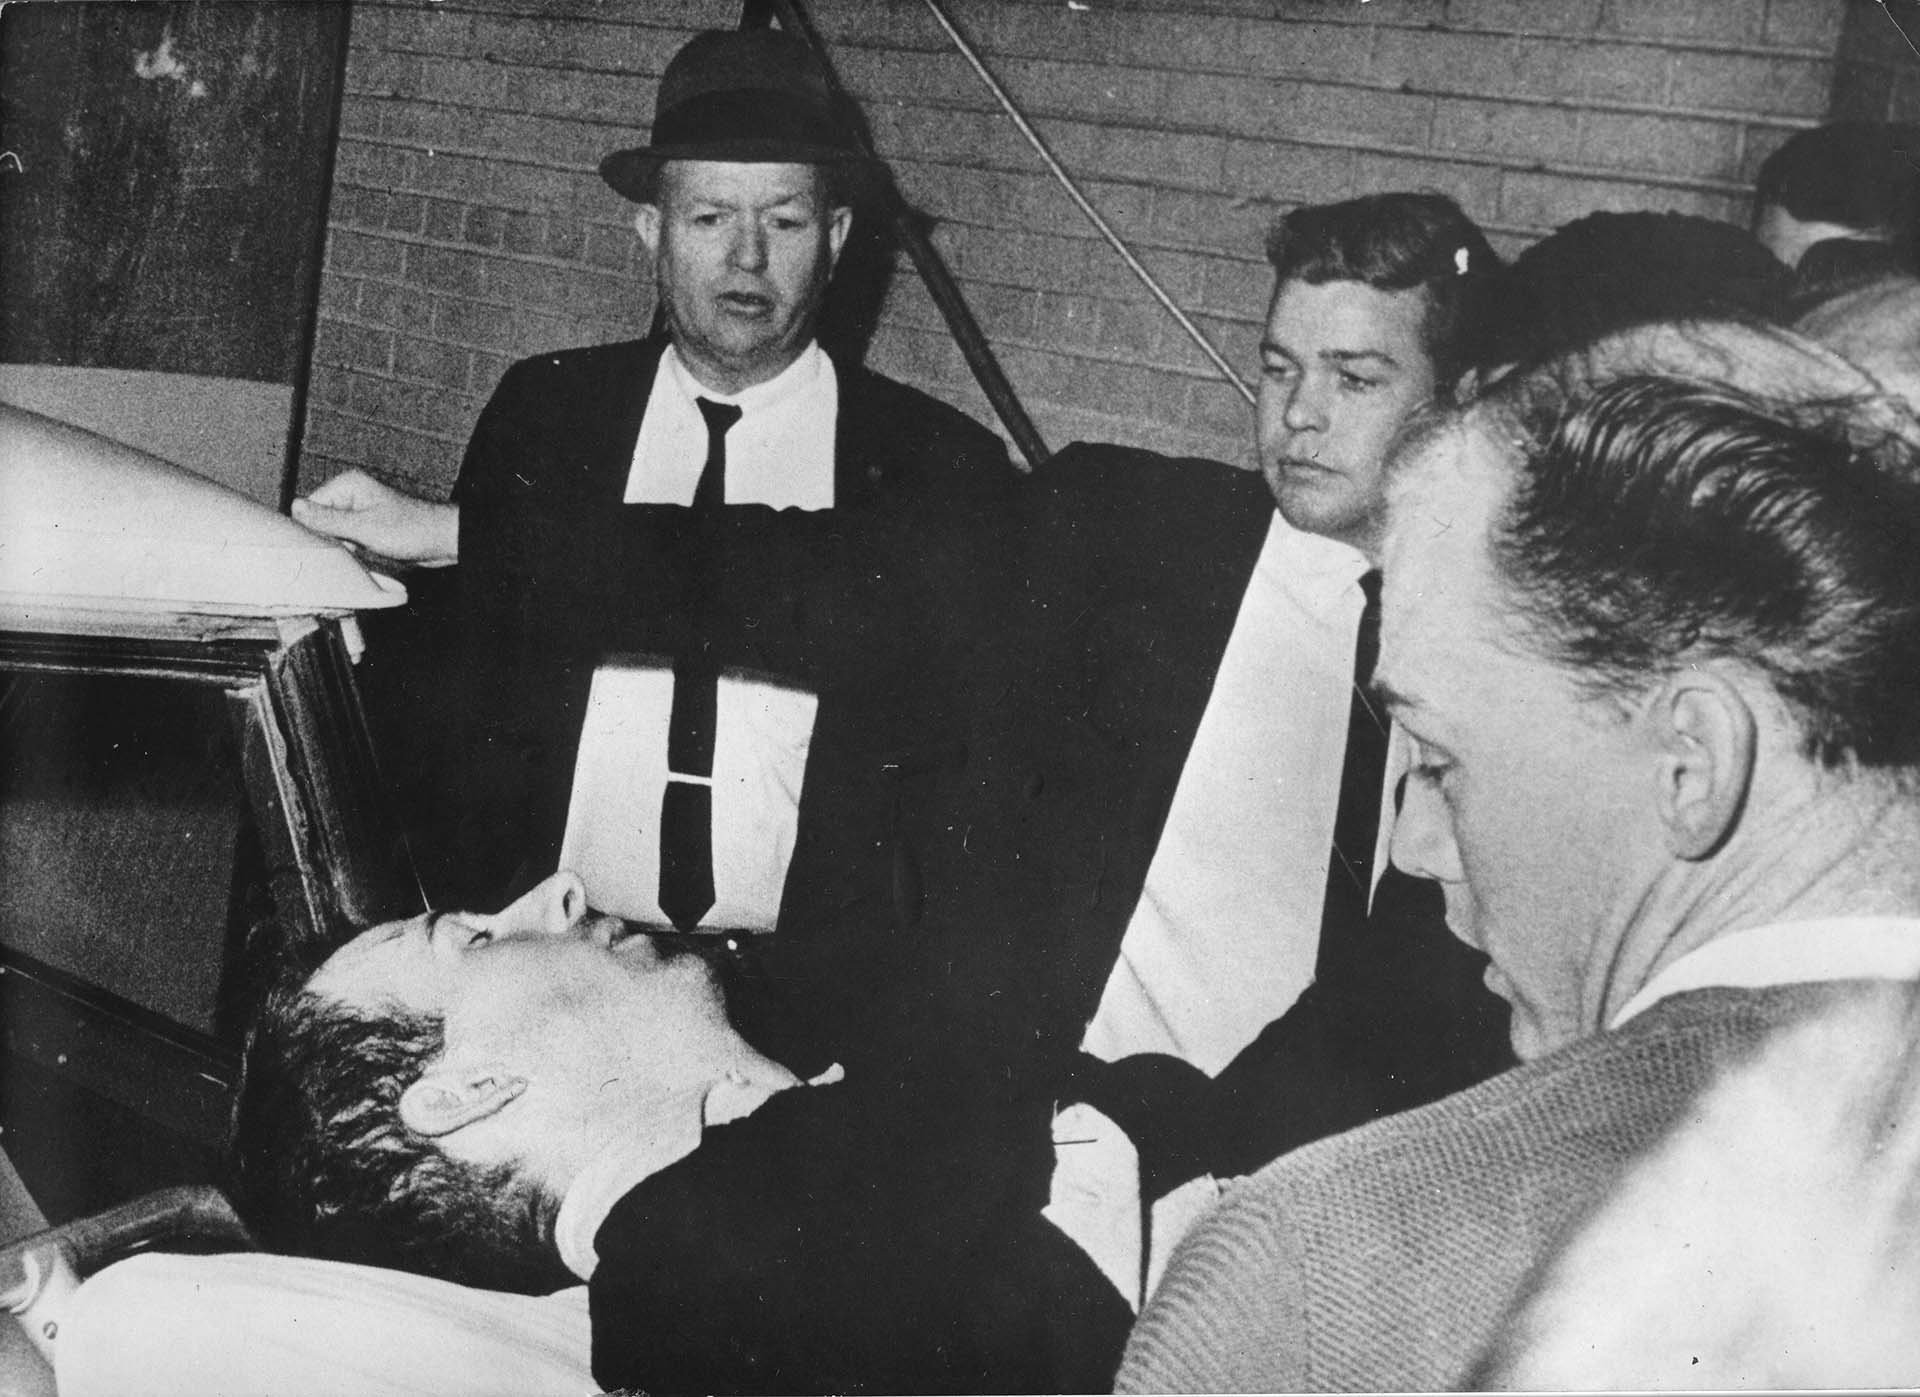 El traslado herido de Oswald tras ser atacado por Jack Ruby (Photo by Votava/Imagno/Getty Images)